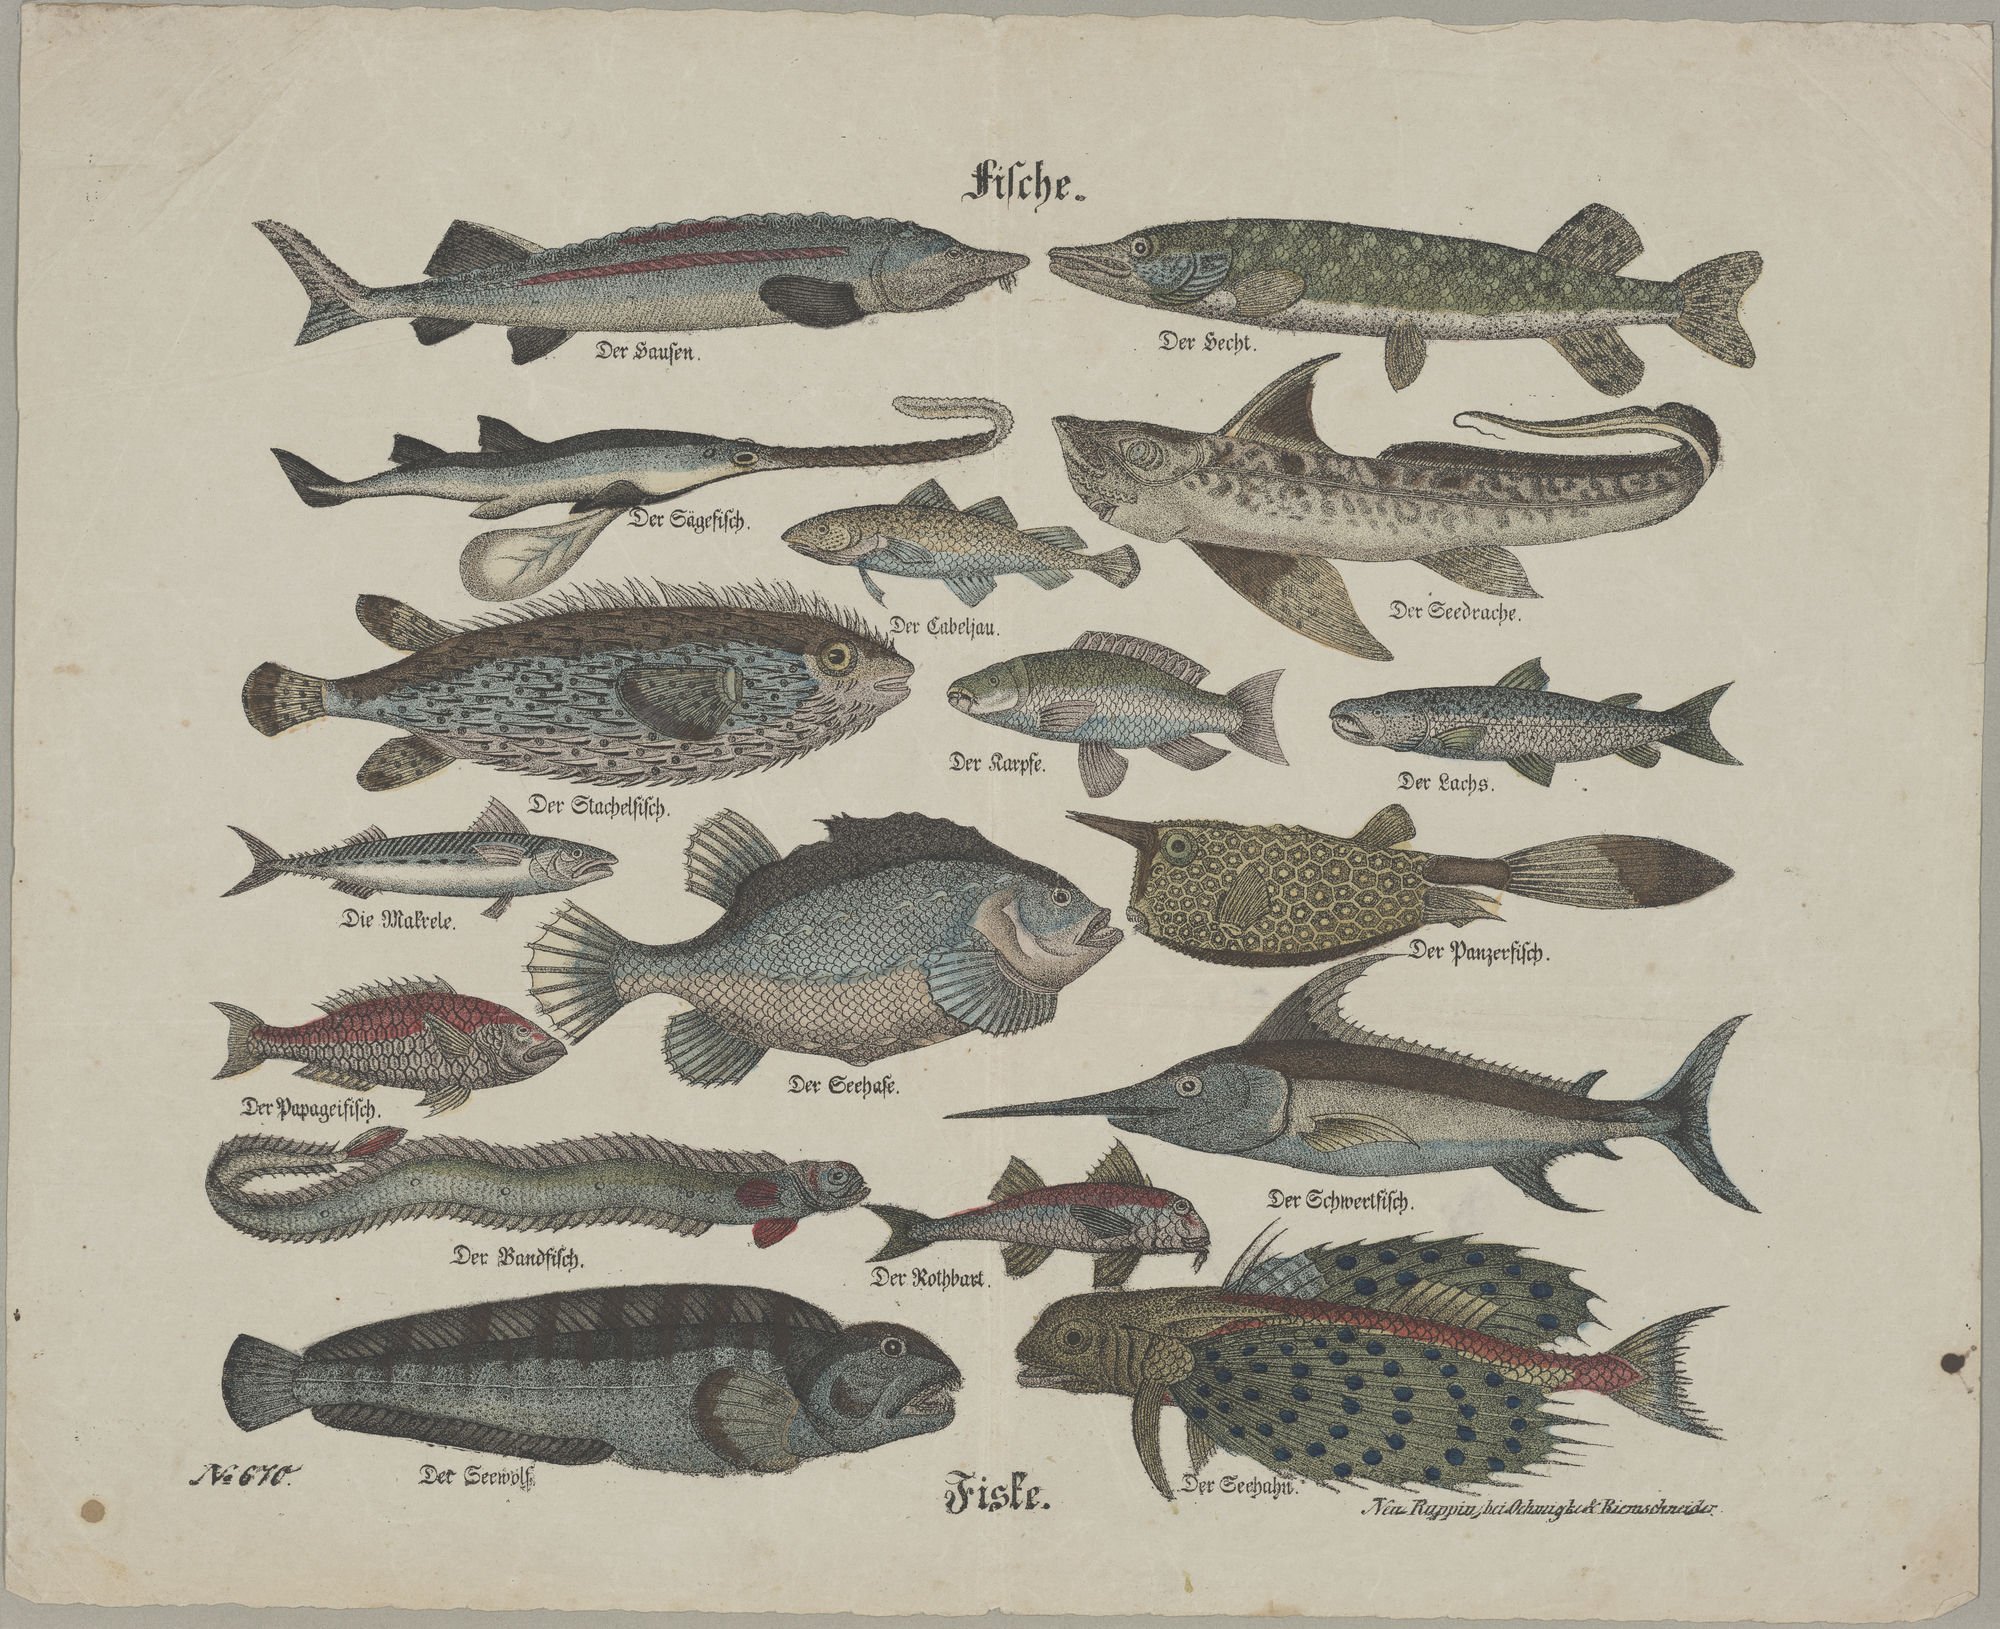 Fische. - Fiske. (Kulturstiftung Sachsen-Anhalt Public Domain Mark)